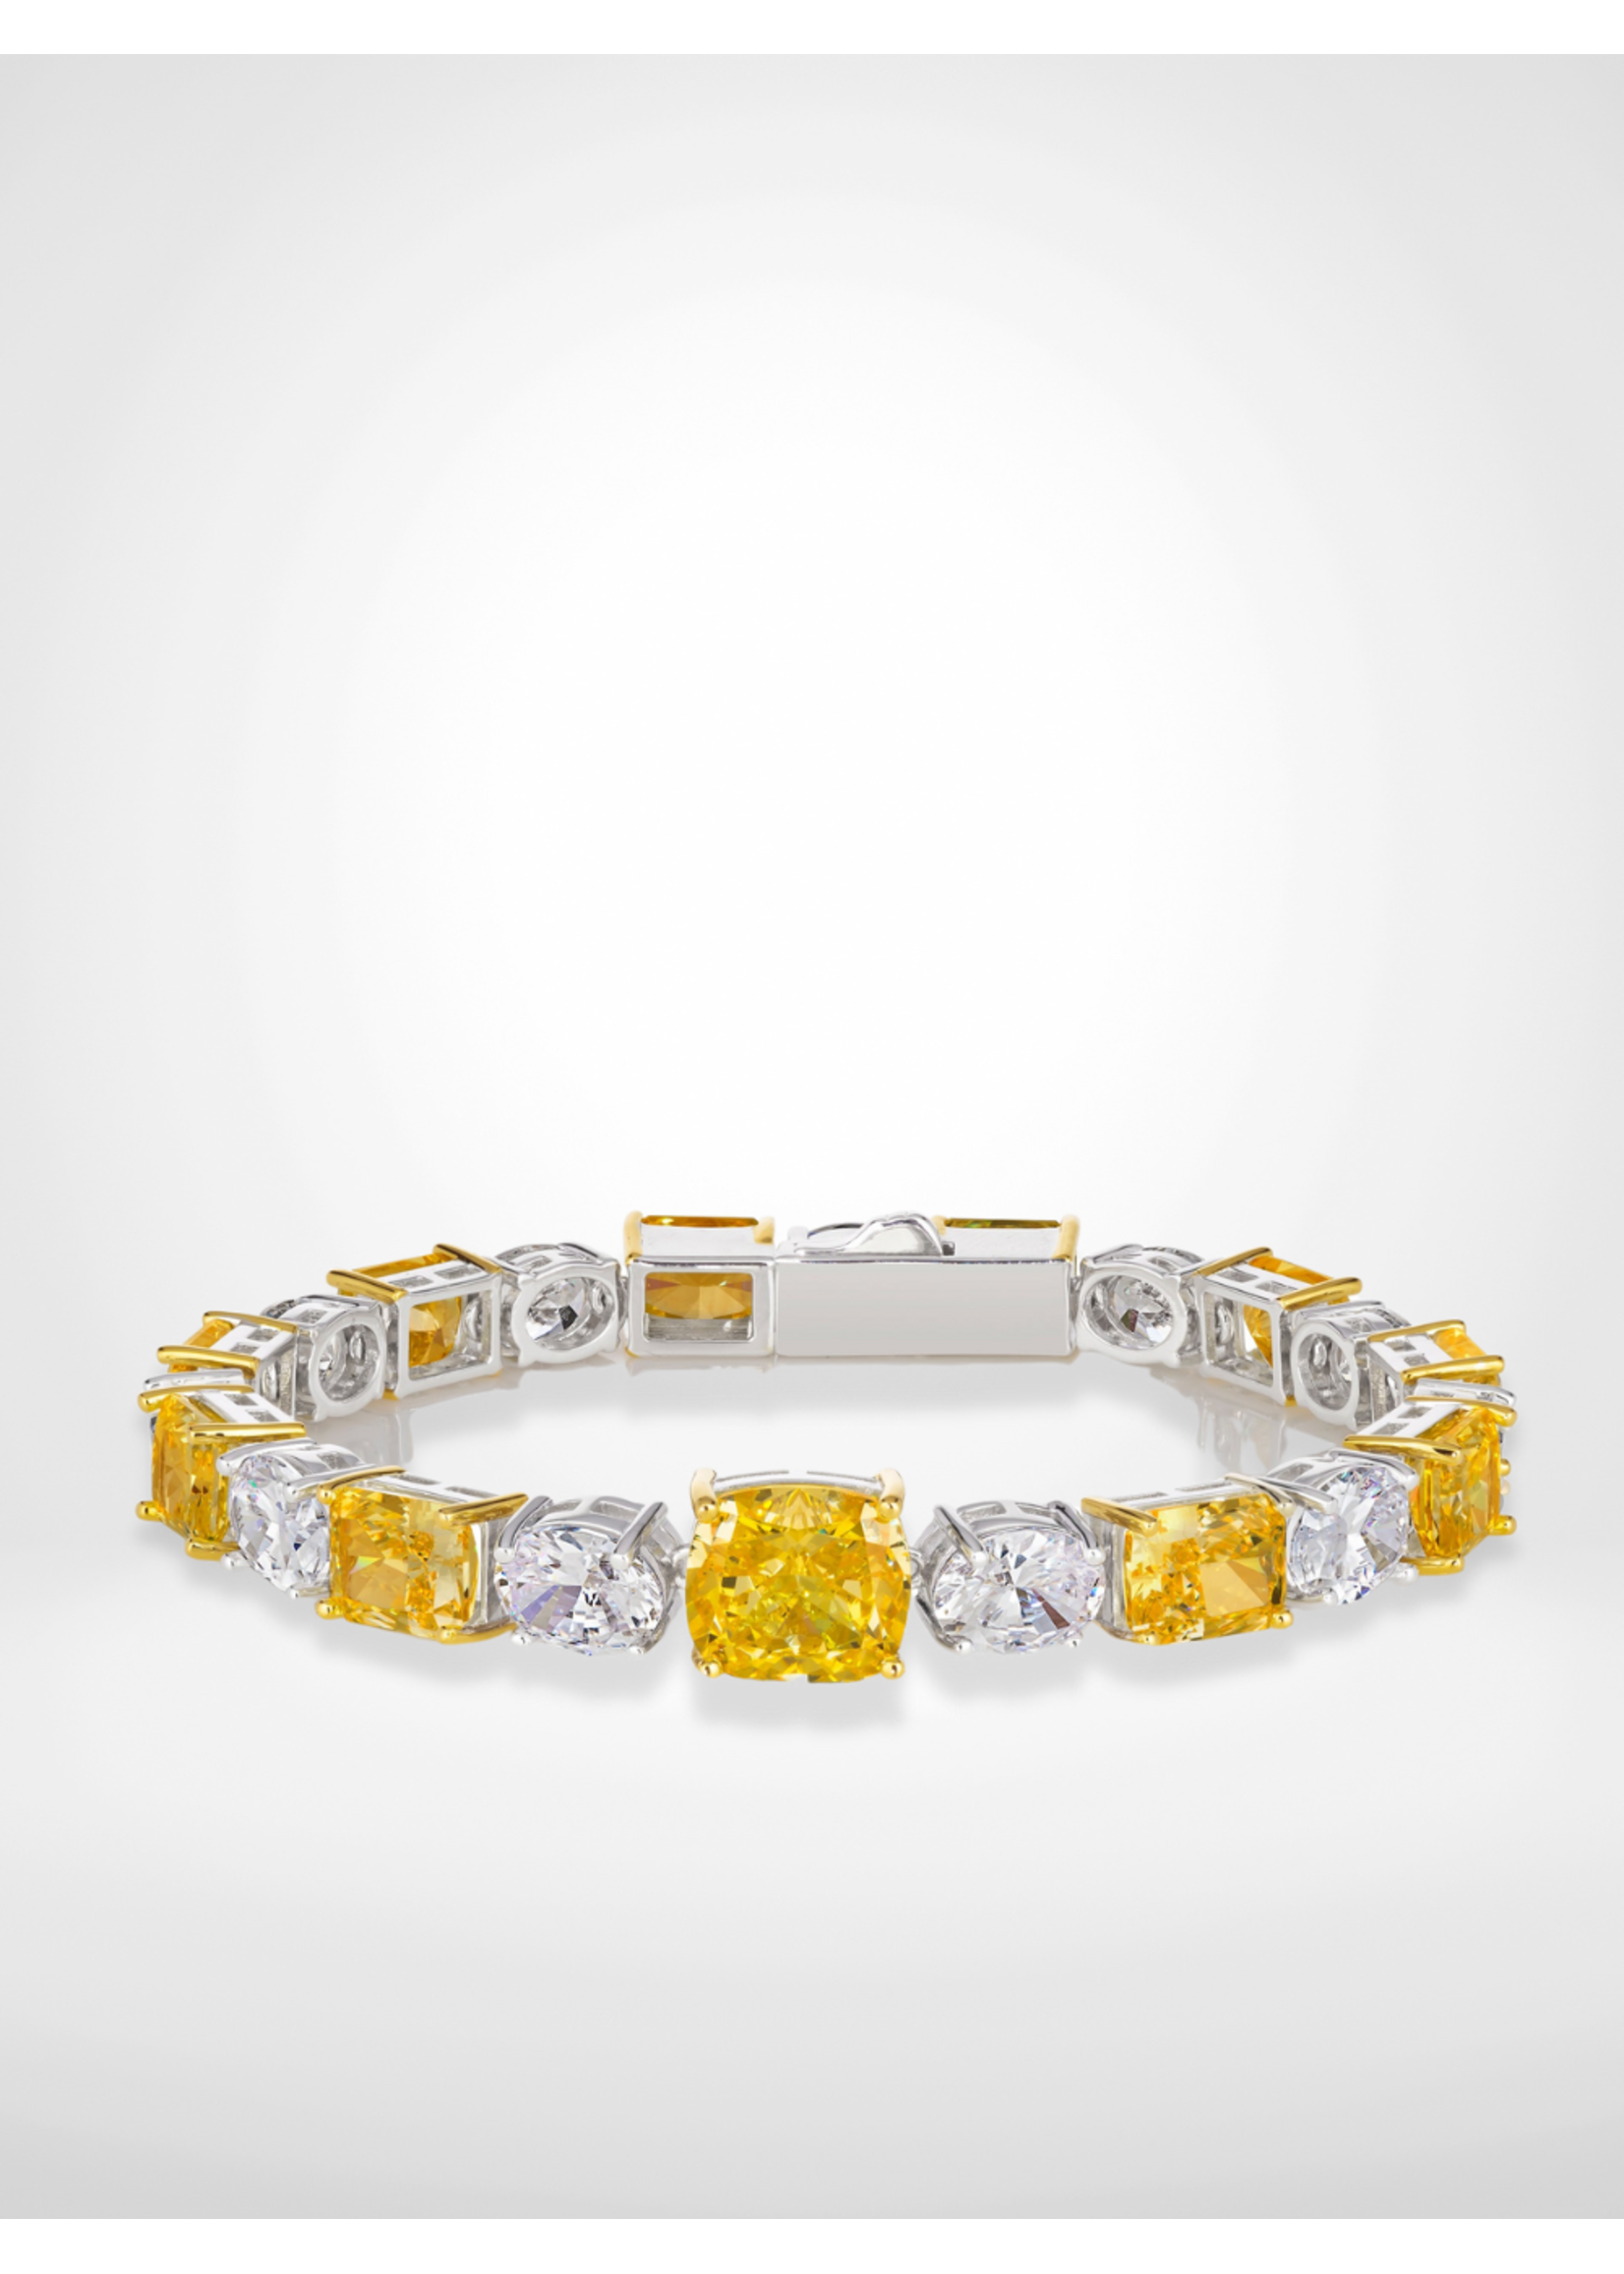 Anna Zuckerman Luxury AZL Diana 41 Canary Yellow Bracelet 7.5”